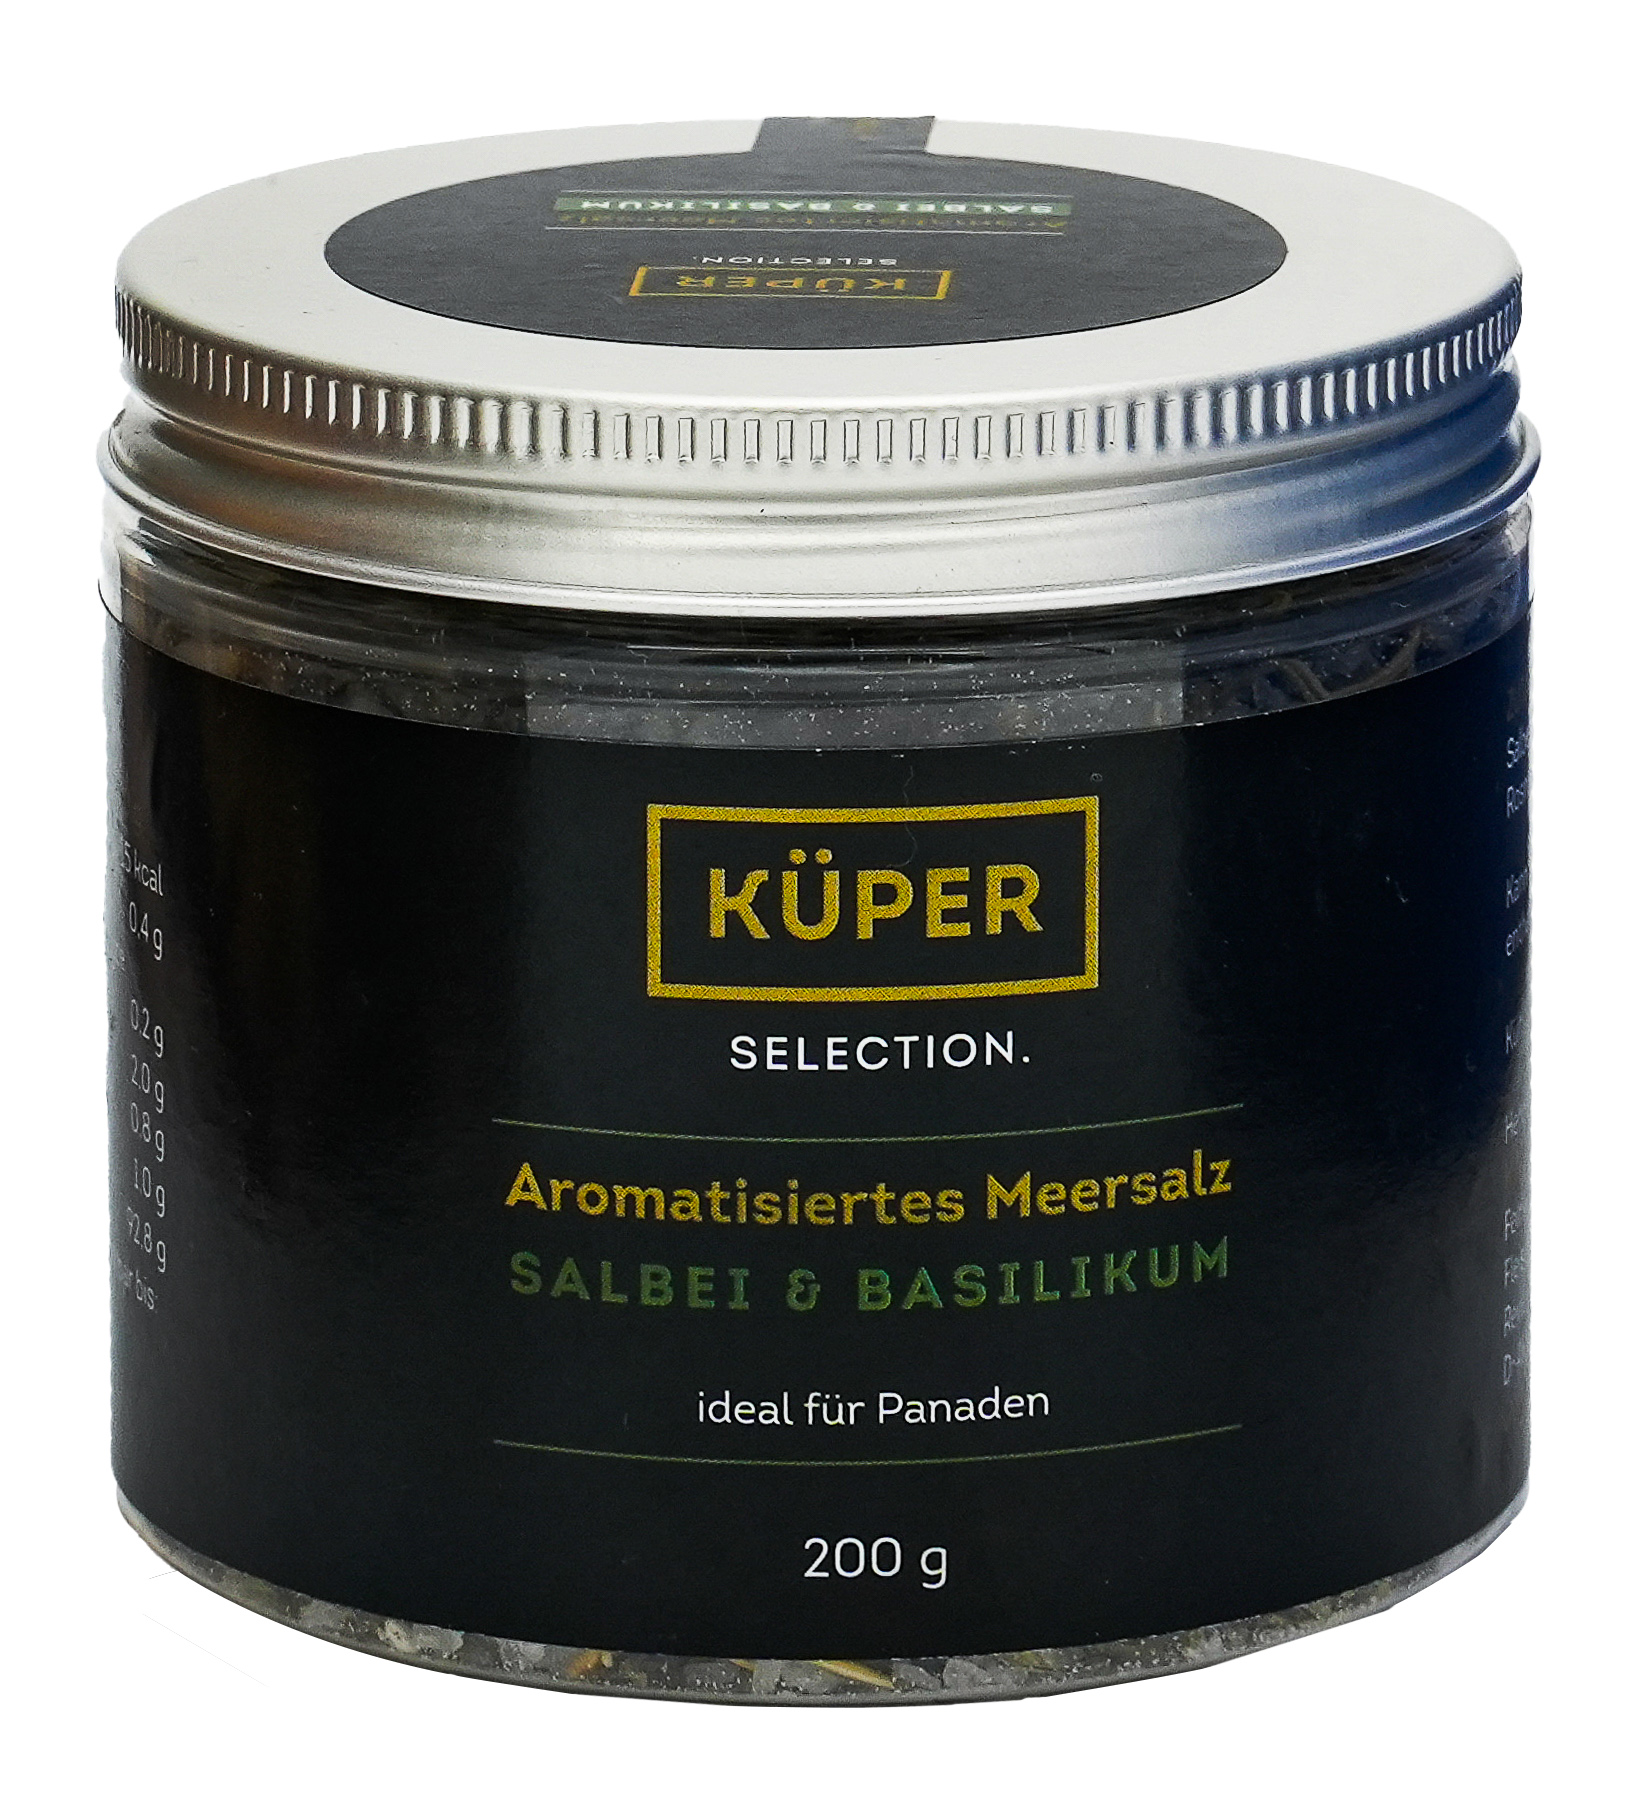 Küper Selection – 200g Aromatisiertes Meersalz mit 1,4% Salbei, 1% Basilikum, Rosmarin und Petersilie in grober Körnung